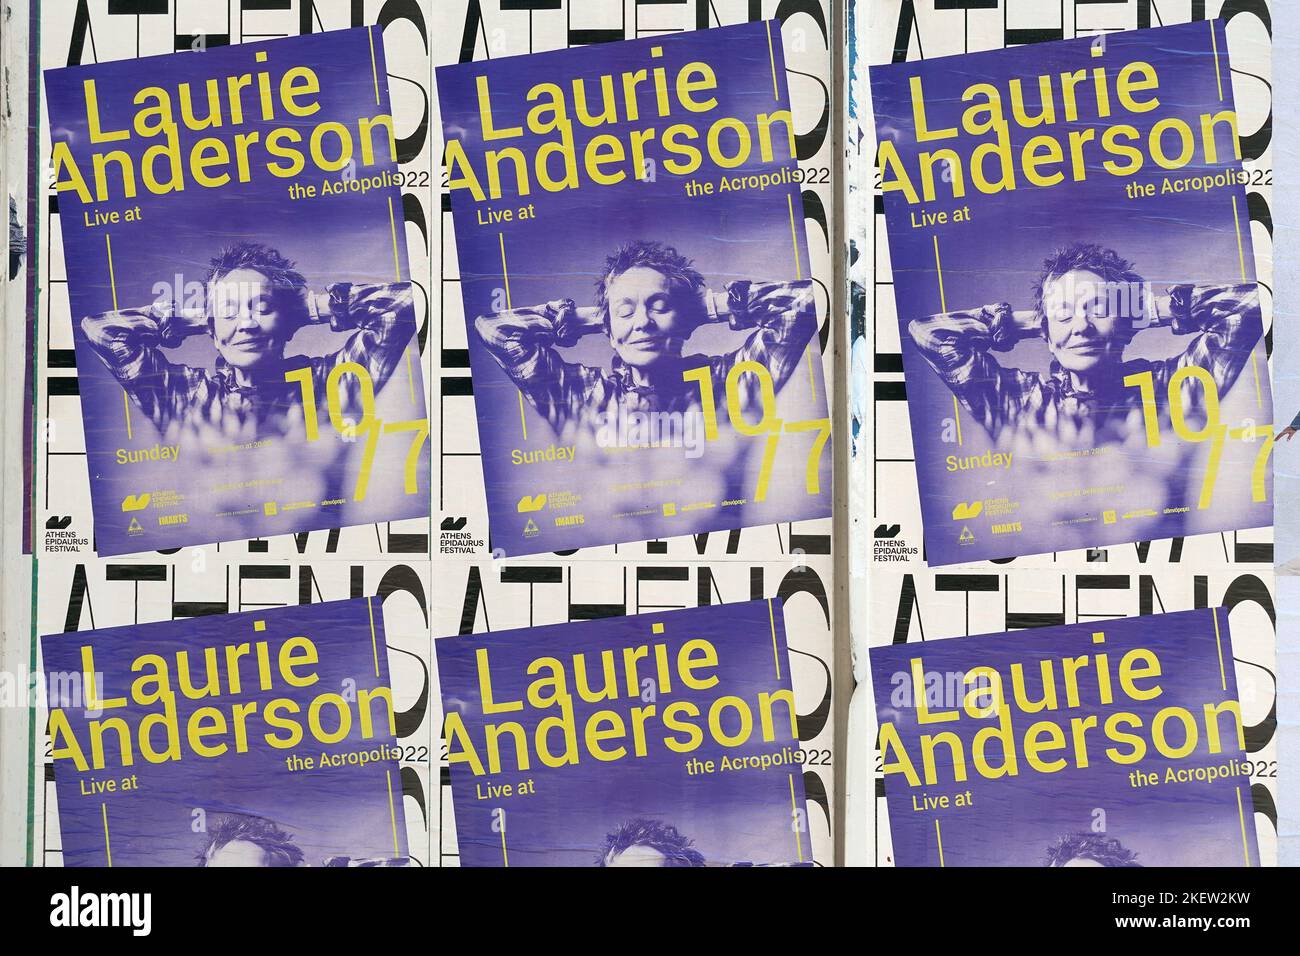 Atene, Grecia - 11 luglio 2022: Laurie Anderson poster concerto pubblicità di strada per la musica elettronica dal vivo. Foto Stock